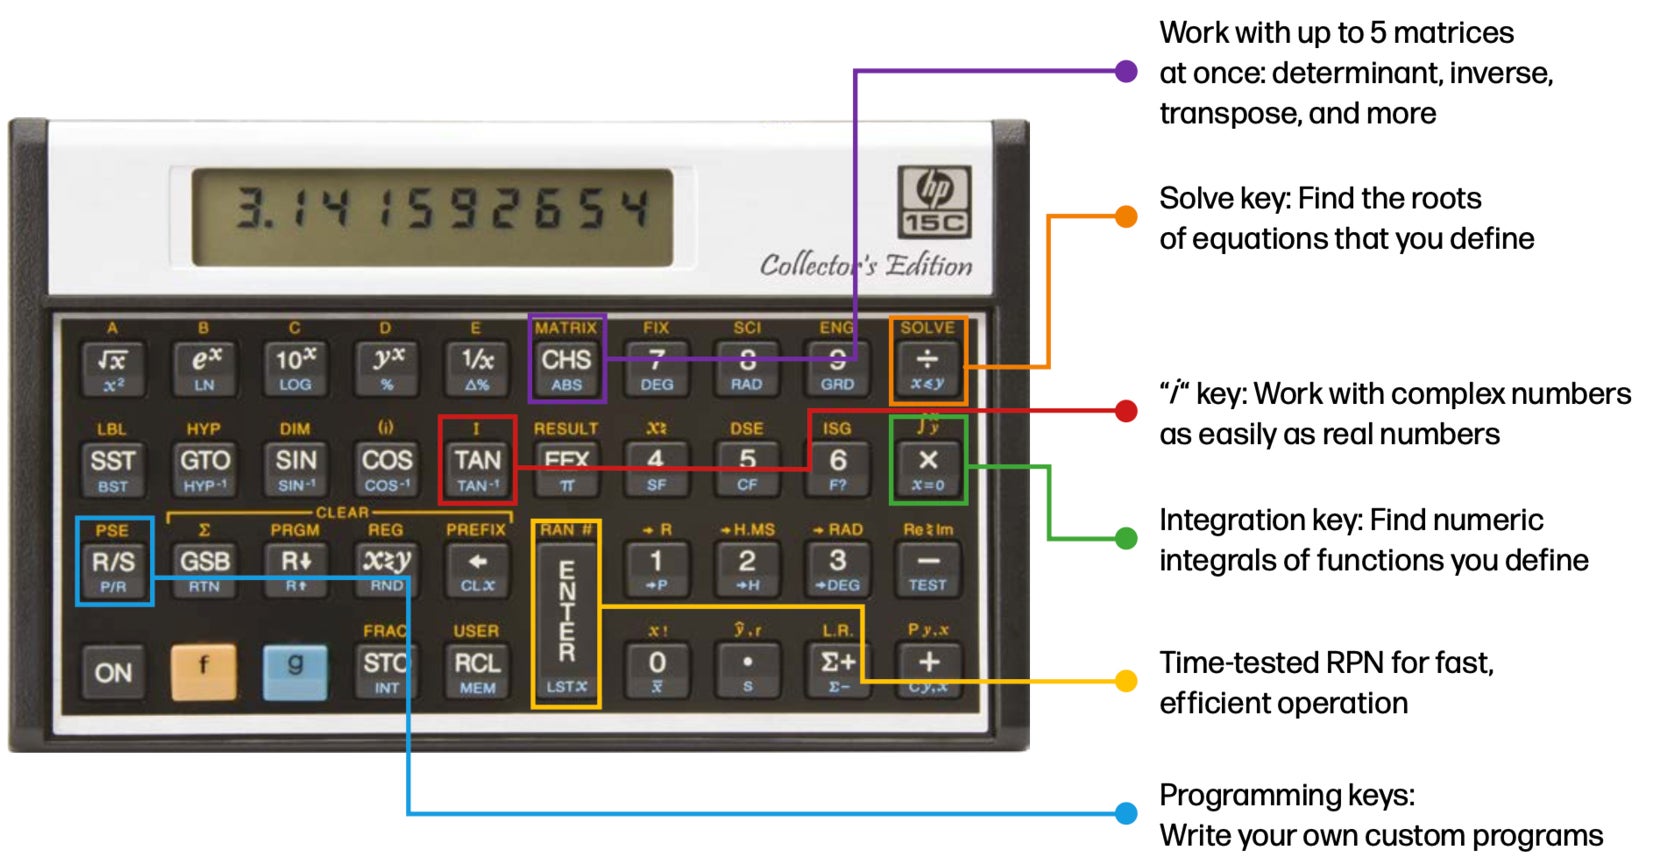 La calculadora científica HP 15C Collector's Edition recibe su nombre por las descripciones del uso de muchos de sus botones.